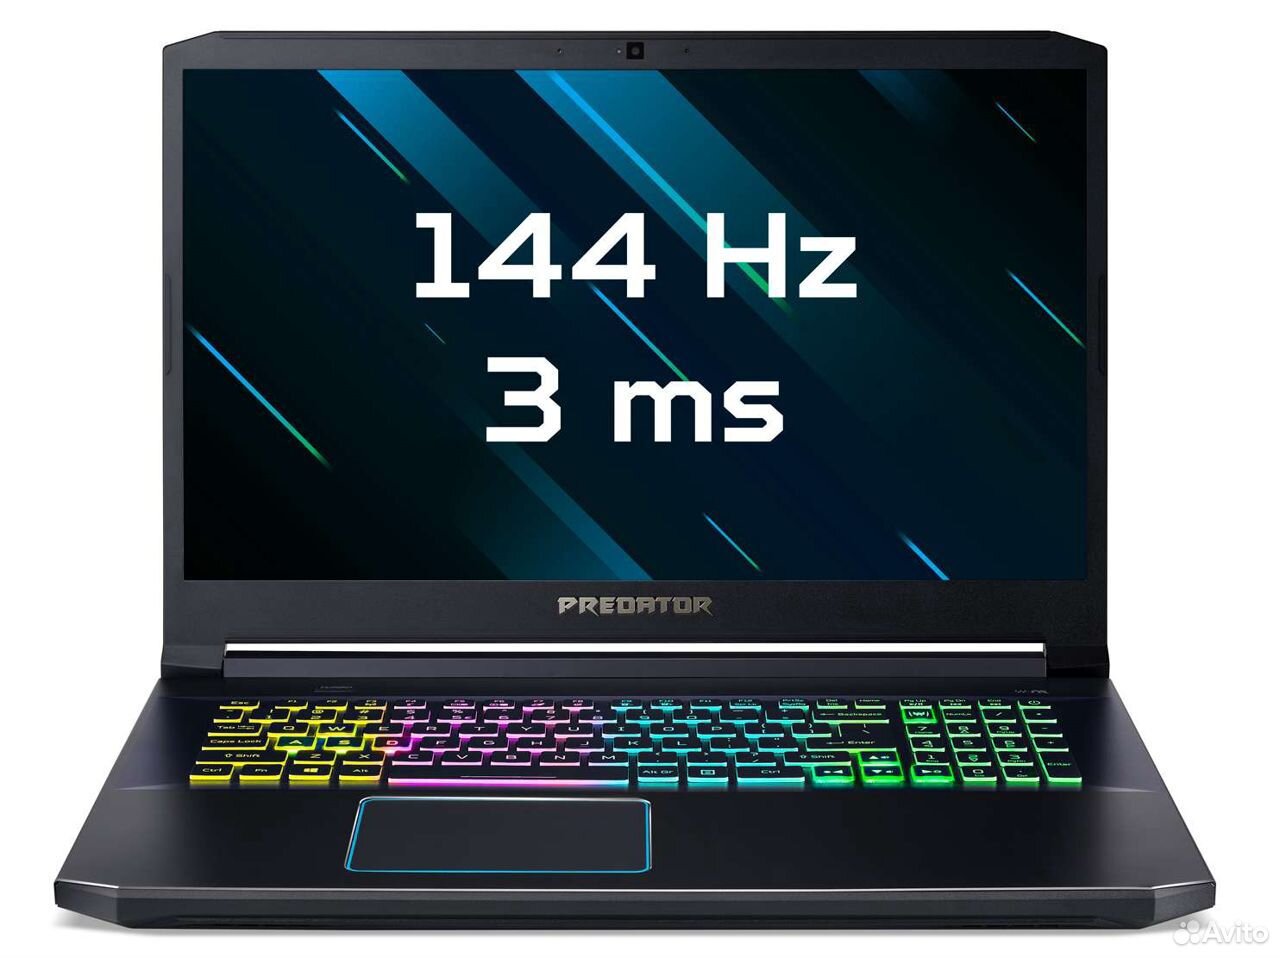 Ноутбук Acer Predator Helios 300 89374790567 купить 10